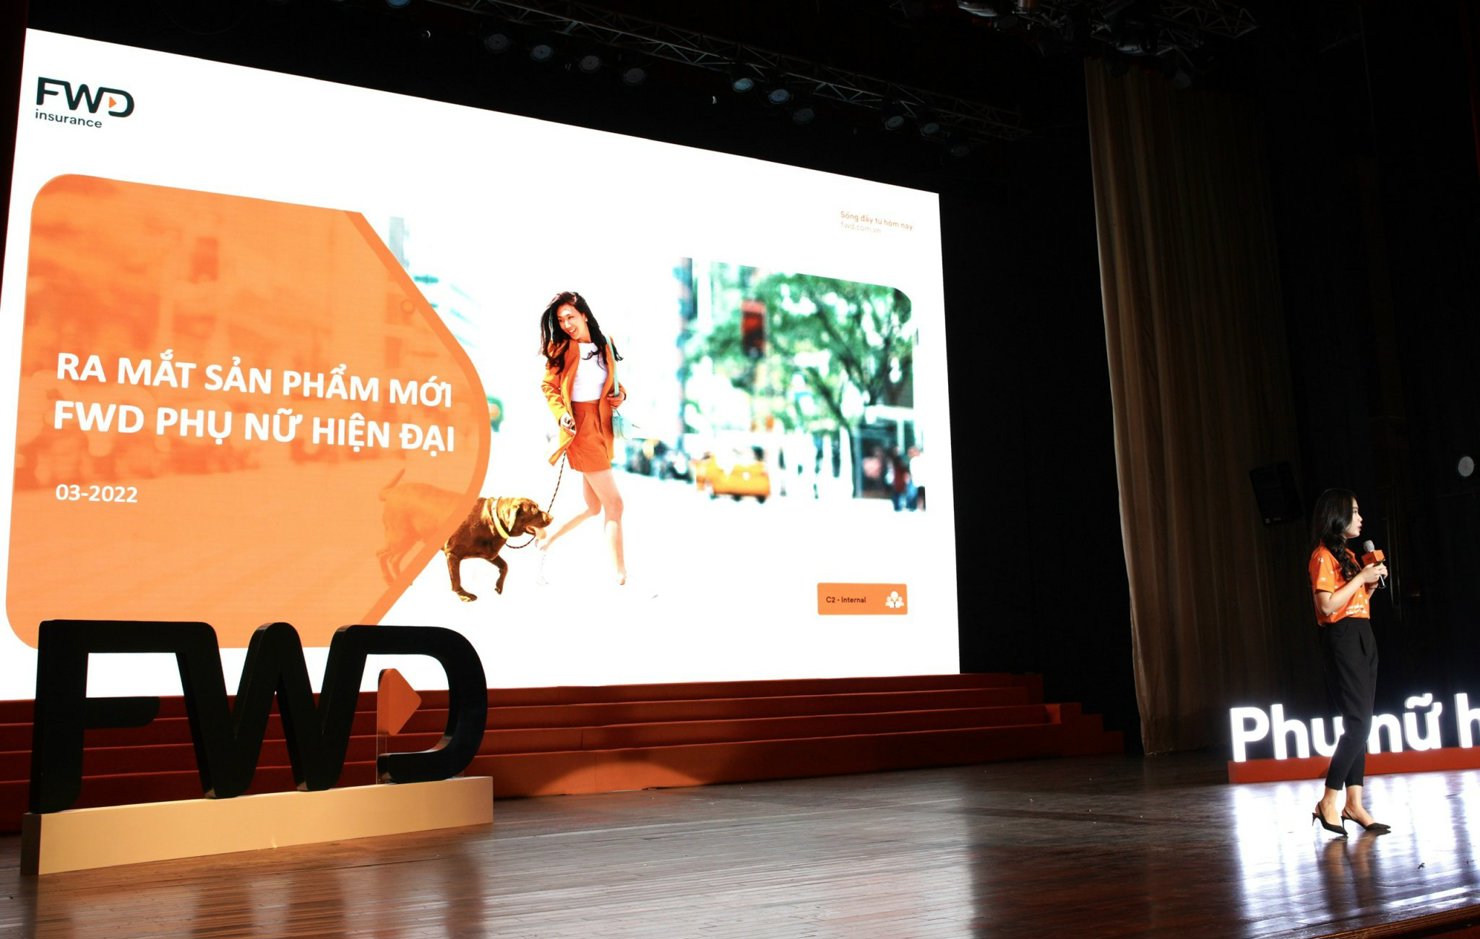 FWD Việt Nam vừa ra mắt sản phẩm mới "FWD Phụ nữ hiện đại".